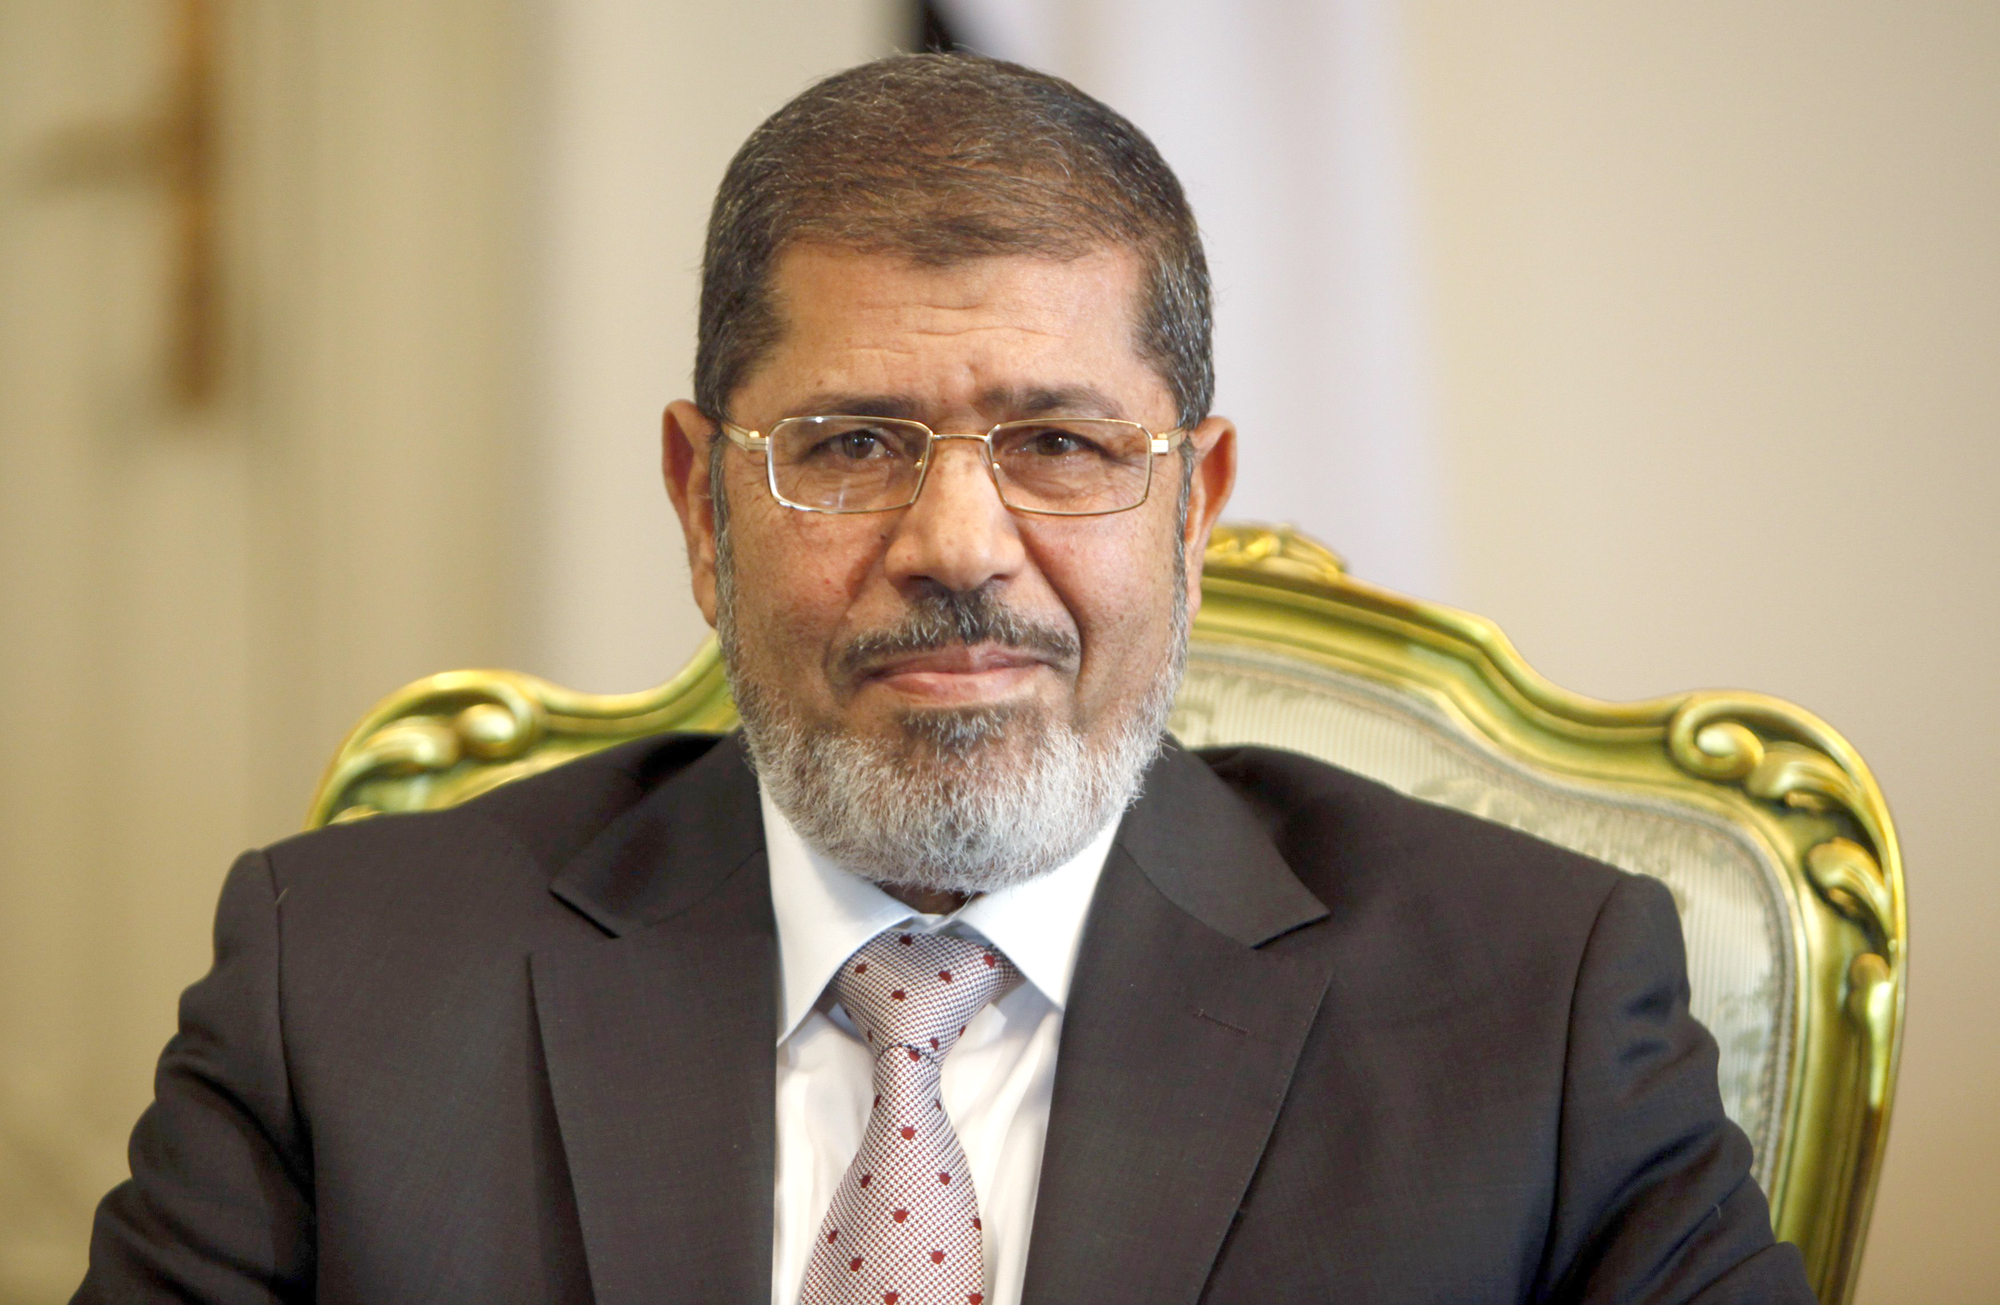 Egypt's ousted President Mohamed Morsi